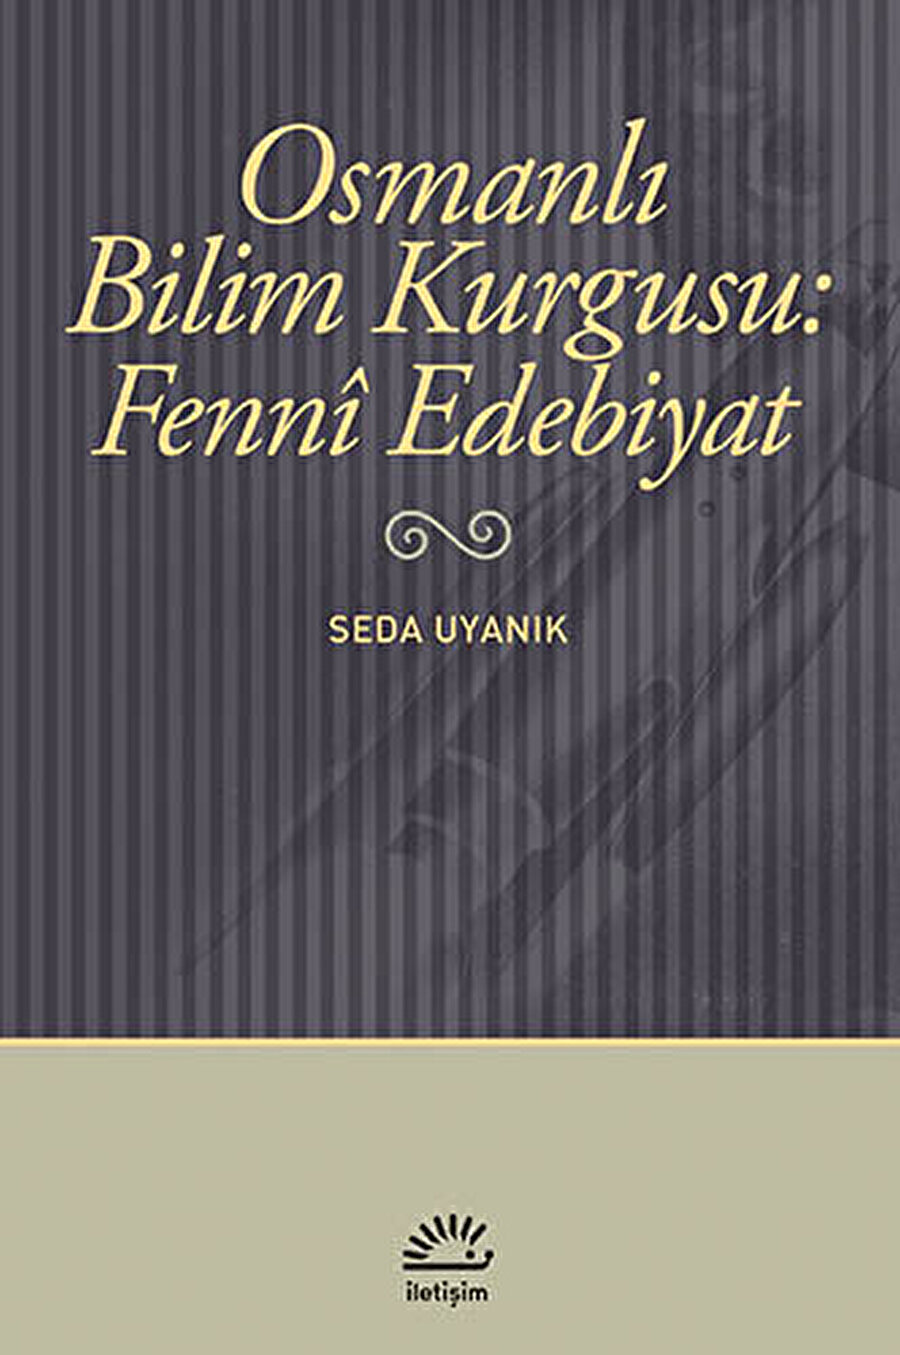 Kitabında Osmanlıda bilim kurgunun izlerini süren Seda Uyanık, Çamlar Altında Musahabe II’yi de, ‘fenni edebiyat’ örneklerinden birisi olarak kabul ediyor.